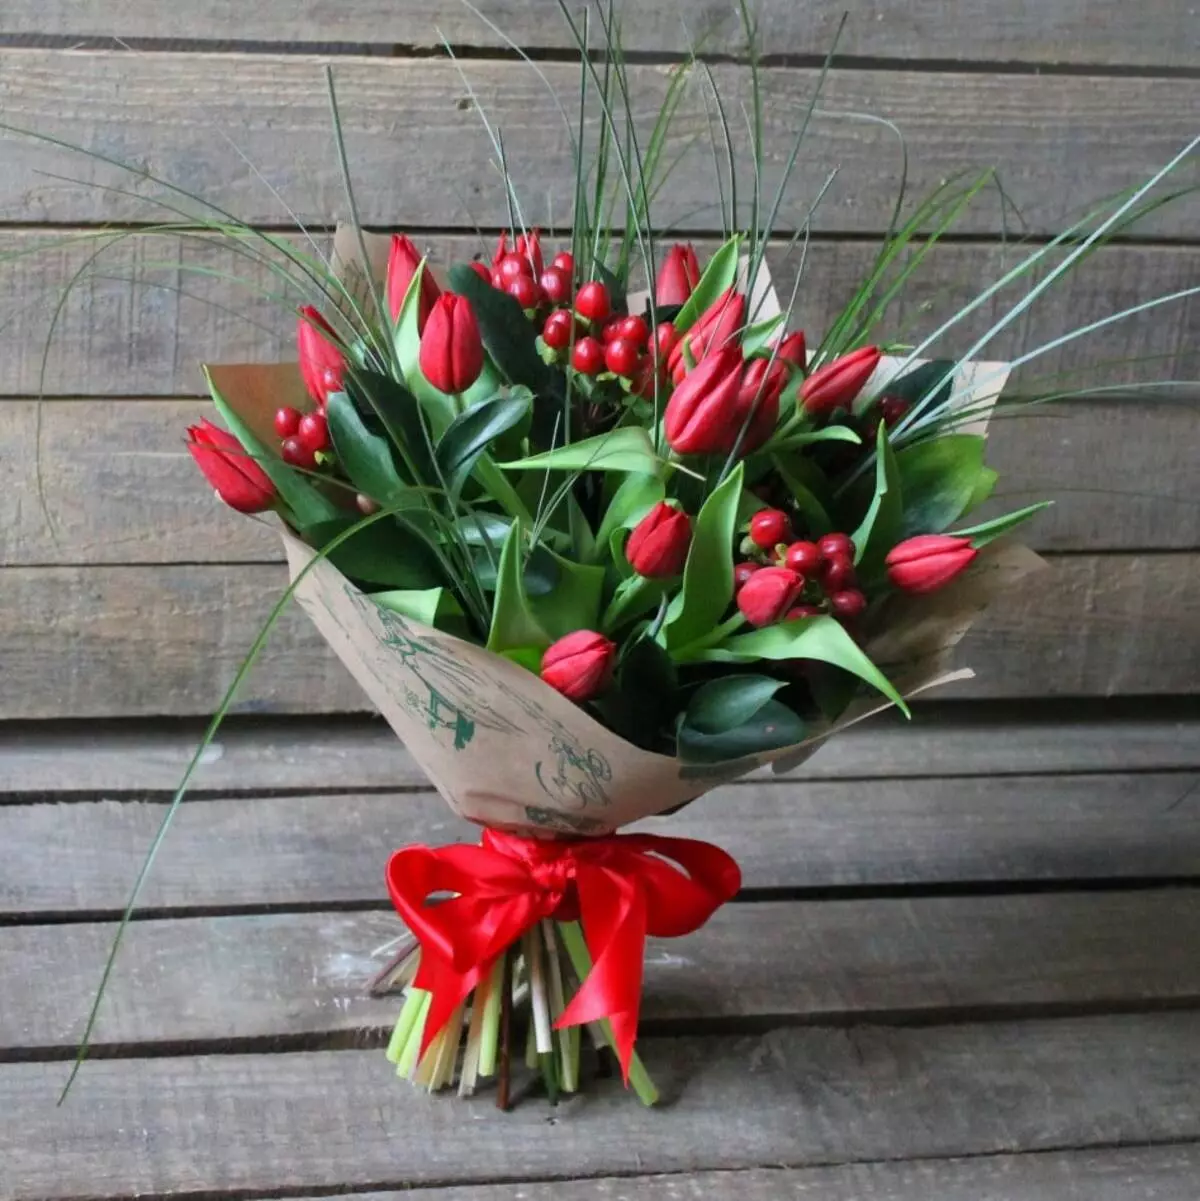 Virágok március 8-án: Mit adnak a lányok és a nők? Mi jobb, ha feleségem adni? Mit adnak el általában? Miért lehetséges a tulipánok megadása? 18190_13